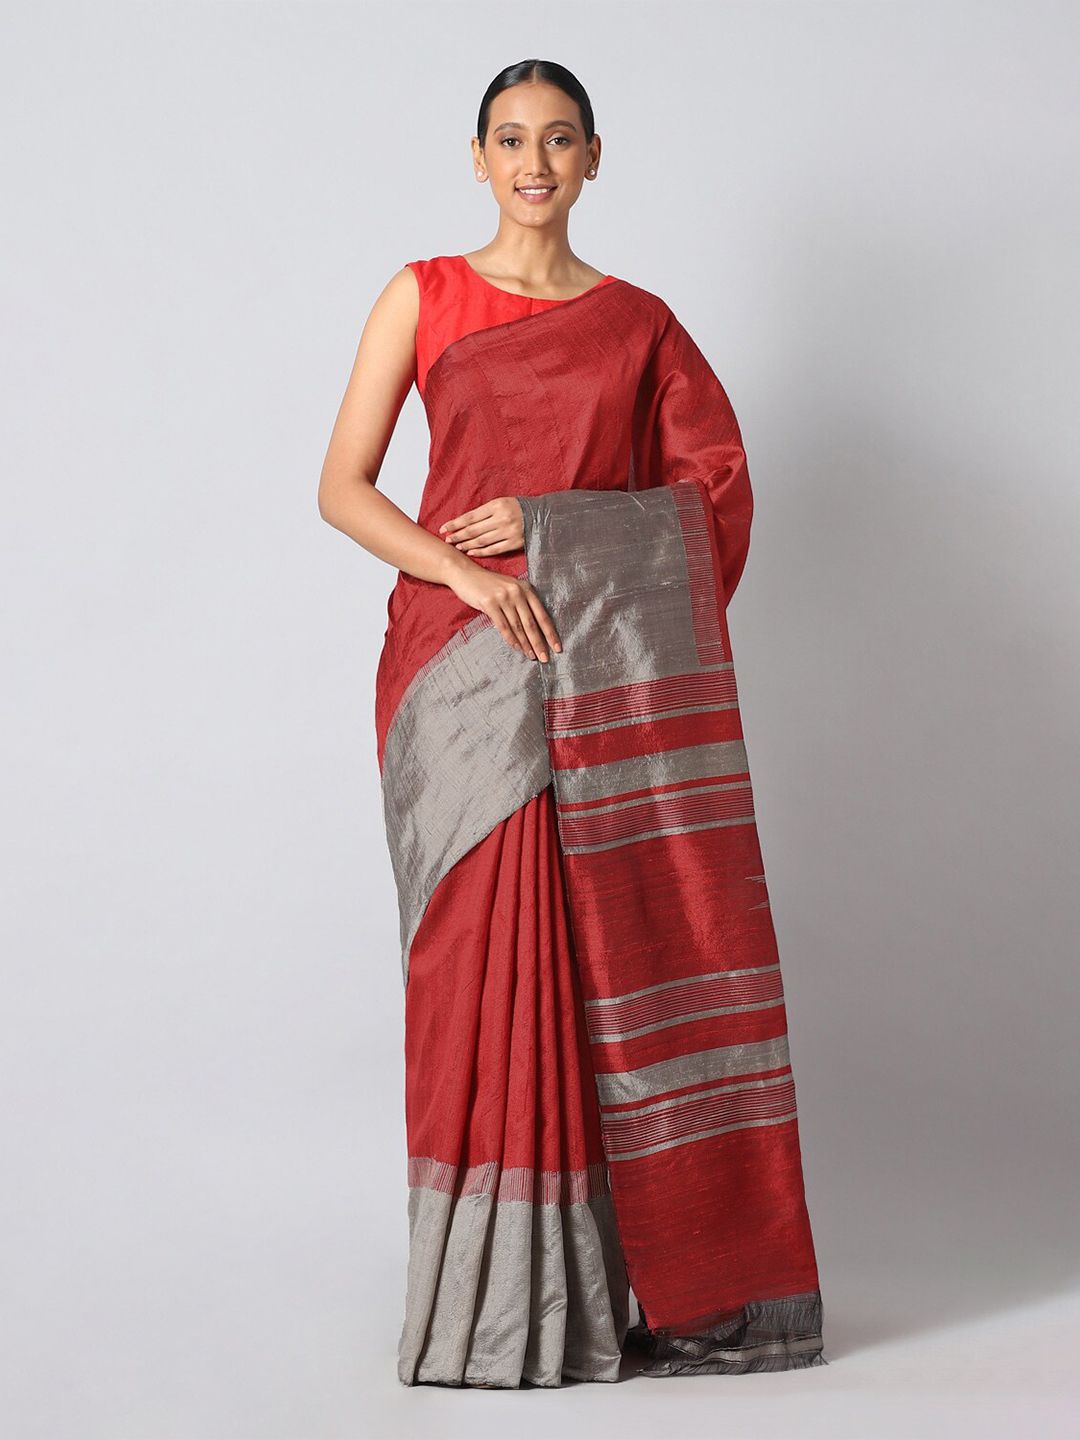 Taneira Red & Silver-Toned Woven Design Zari Pure Silk Saree Price in India